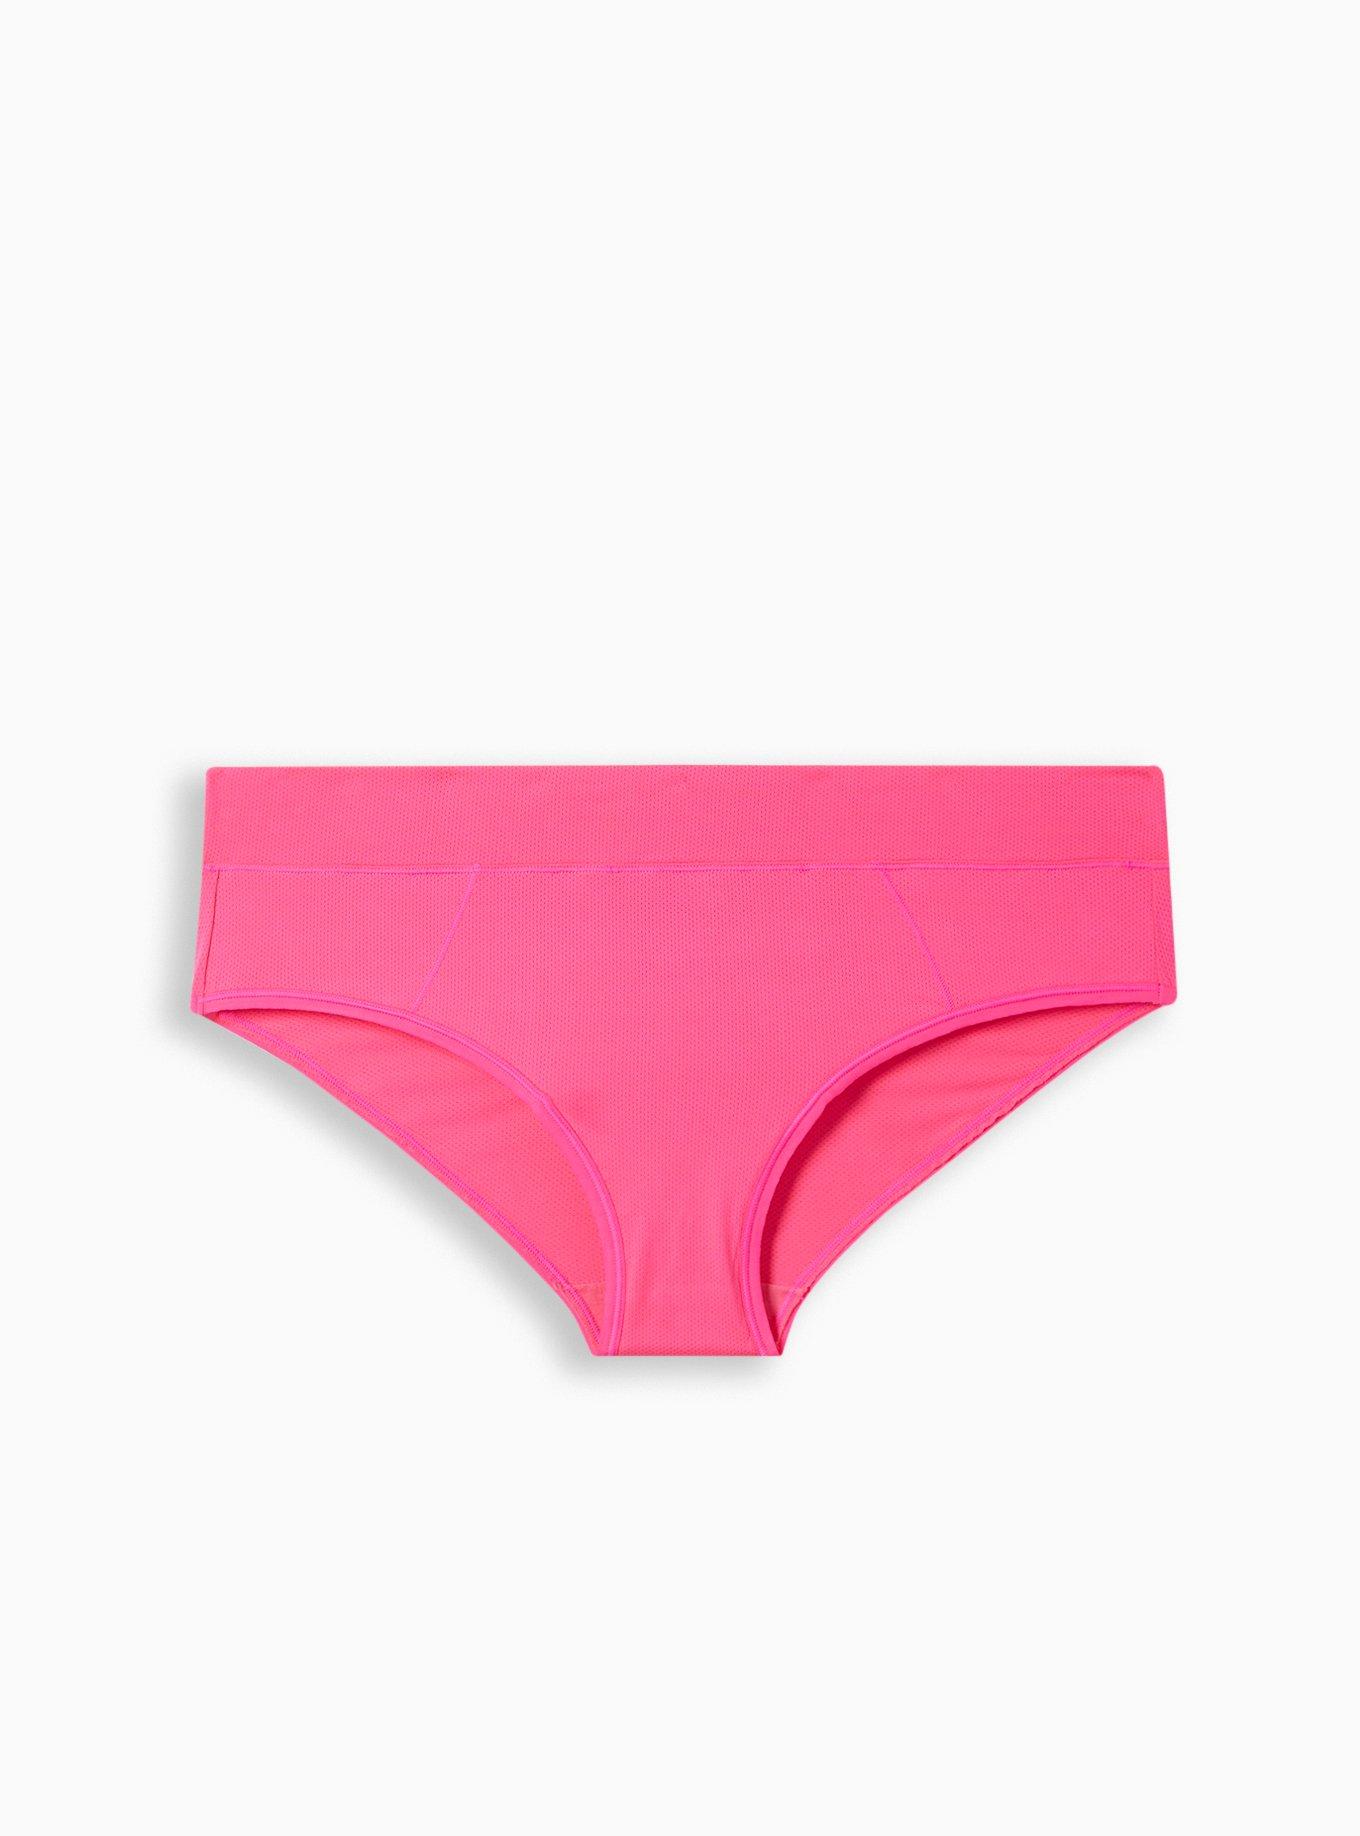 Vintage Nylon Pink Panties Size 7 -  Norway